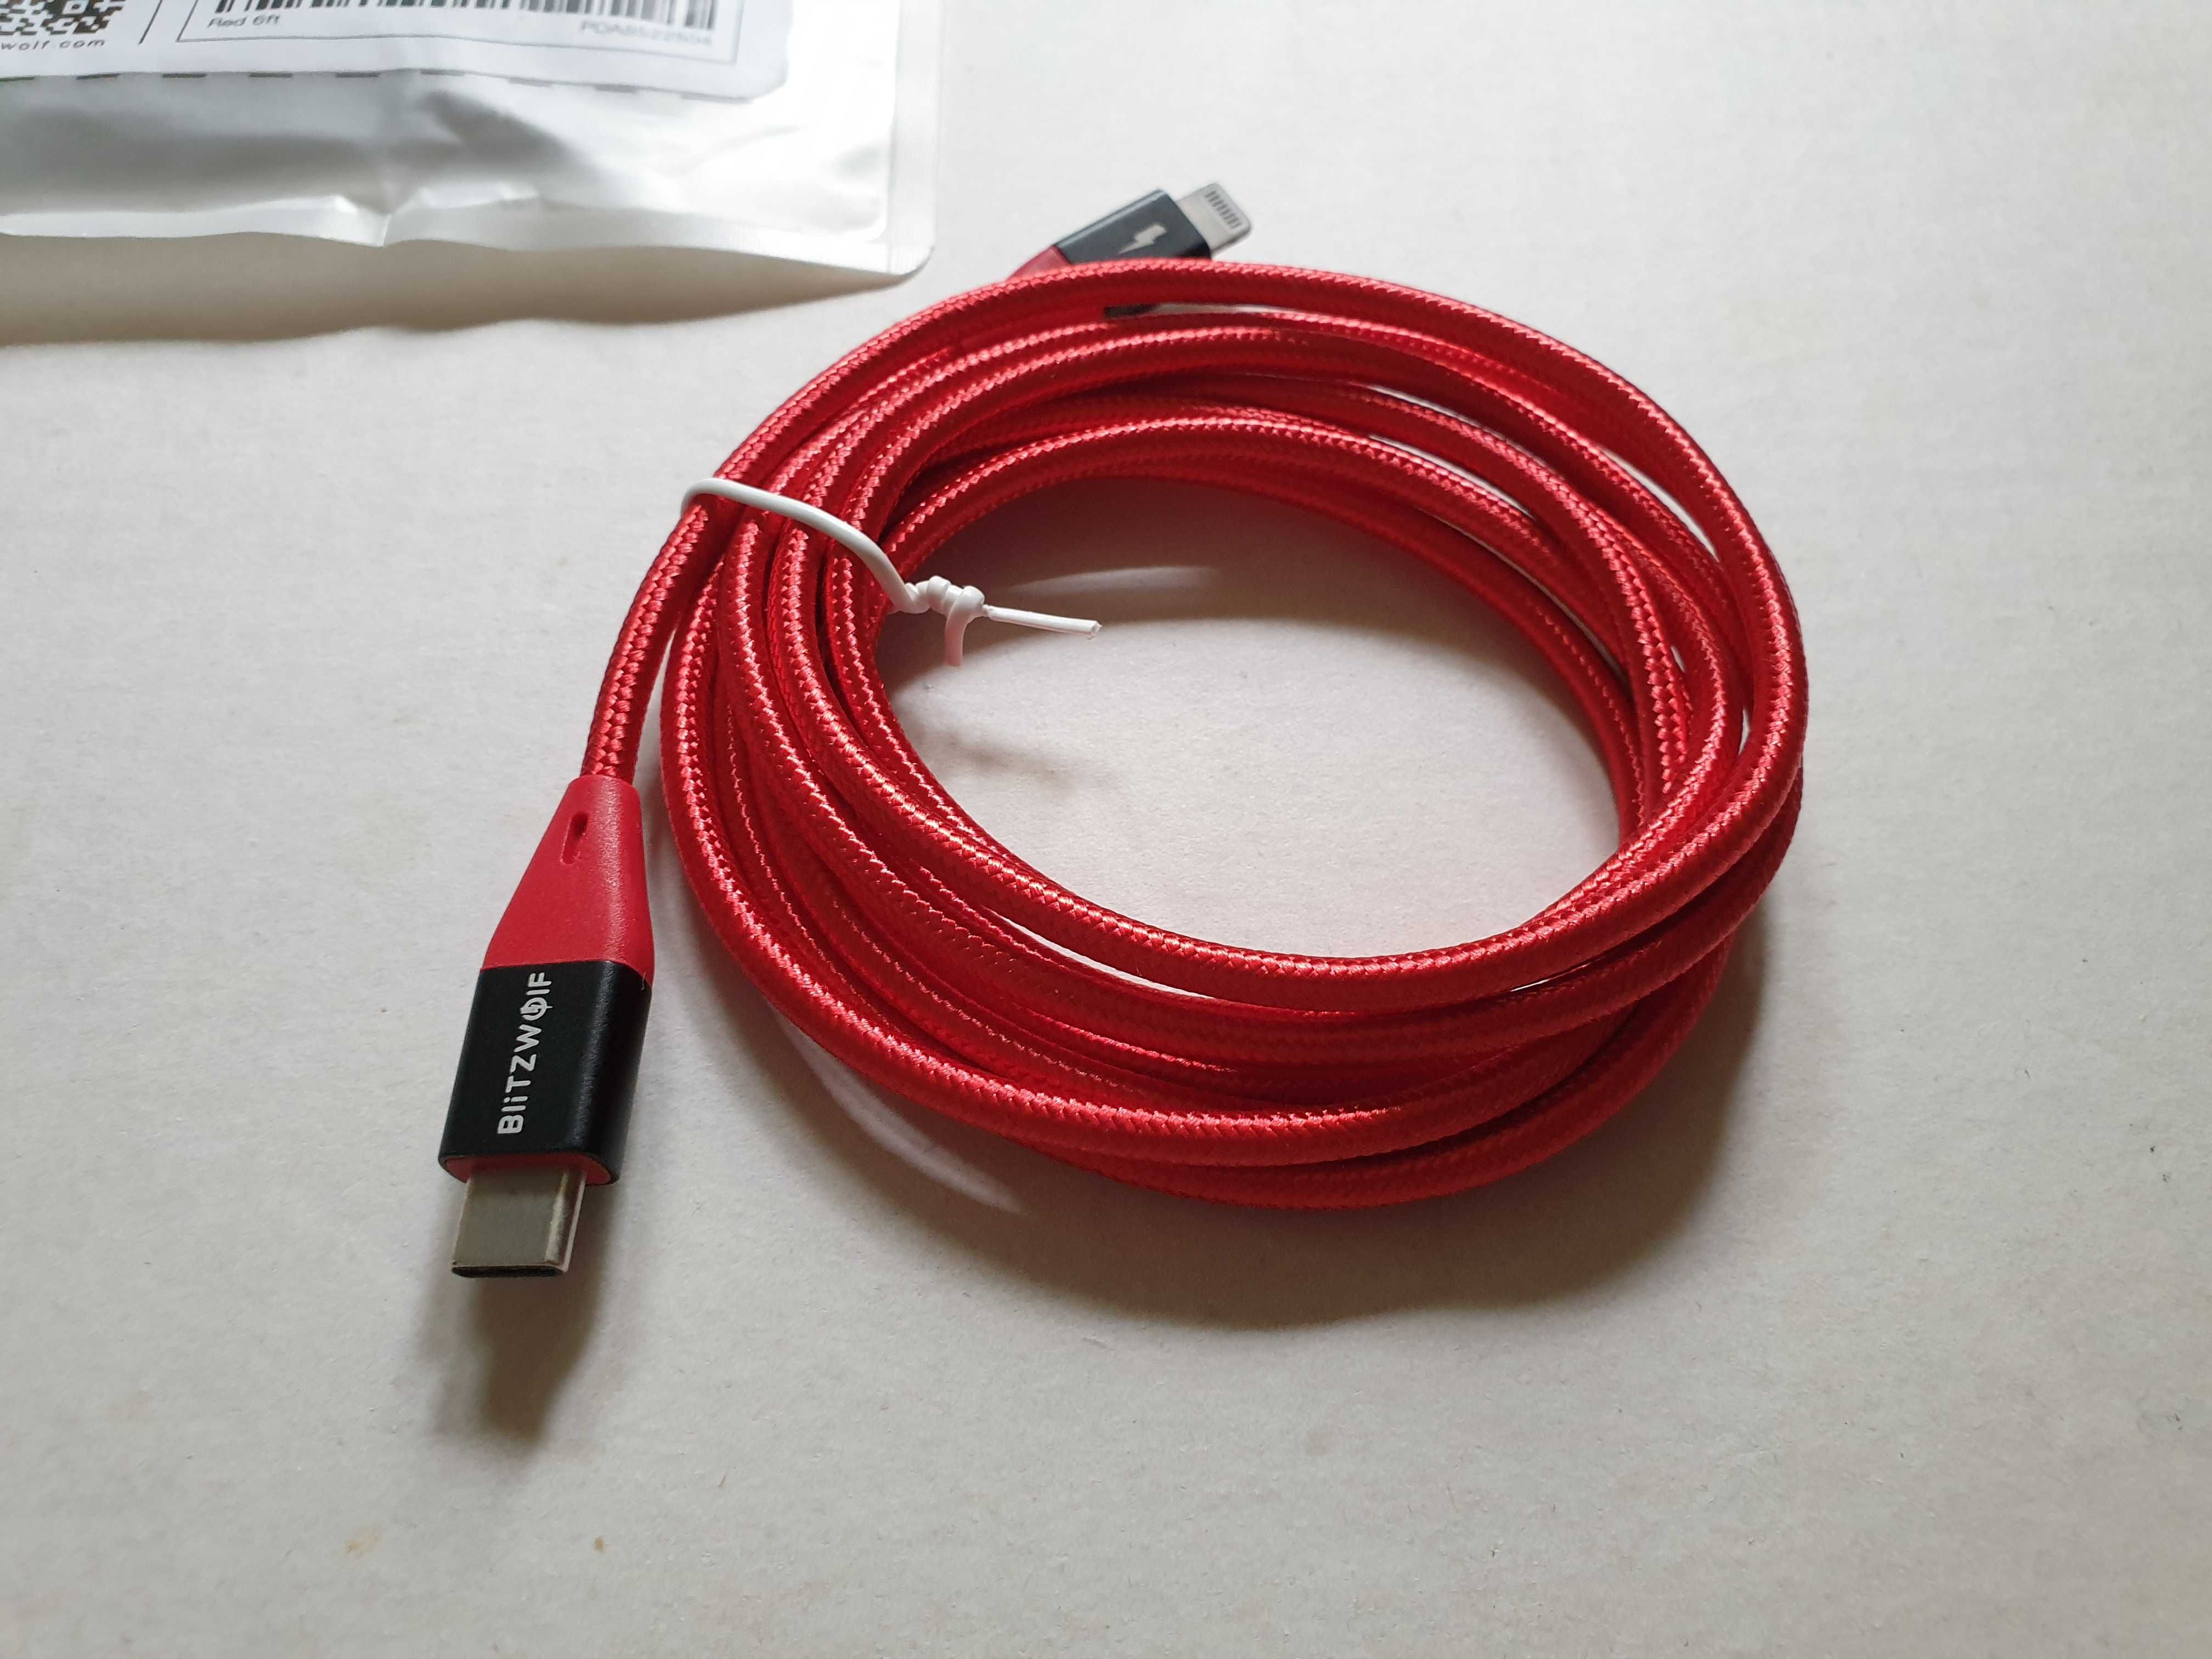 Blitzwolf BW-CL3 MFI сертифицированный type-c lightning кабель (1,8 м)